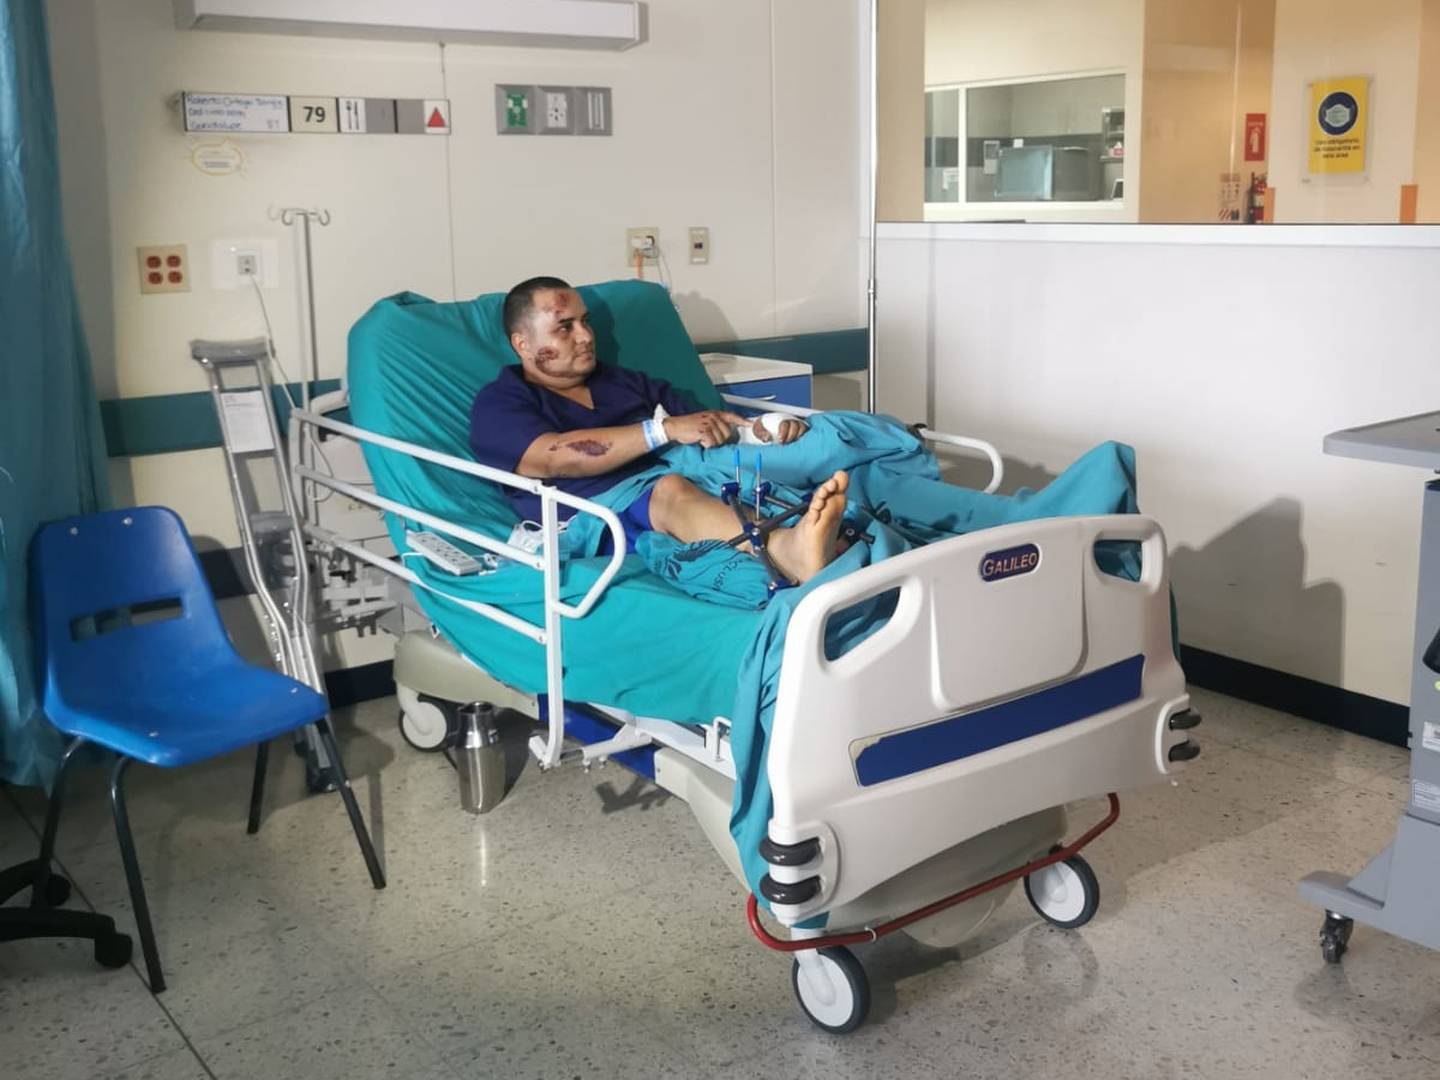 Tras el accidente, Ortega estuvo internado varios días en el hospital del Trauma. Foto Roberto Ortega.